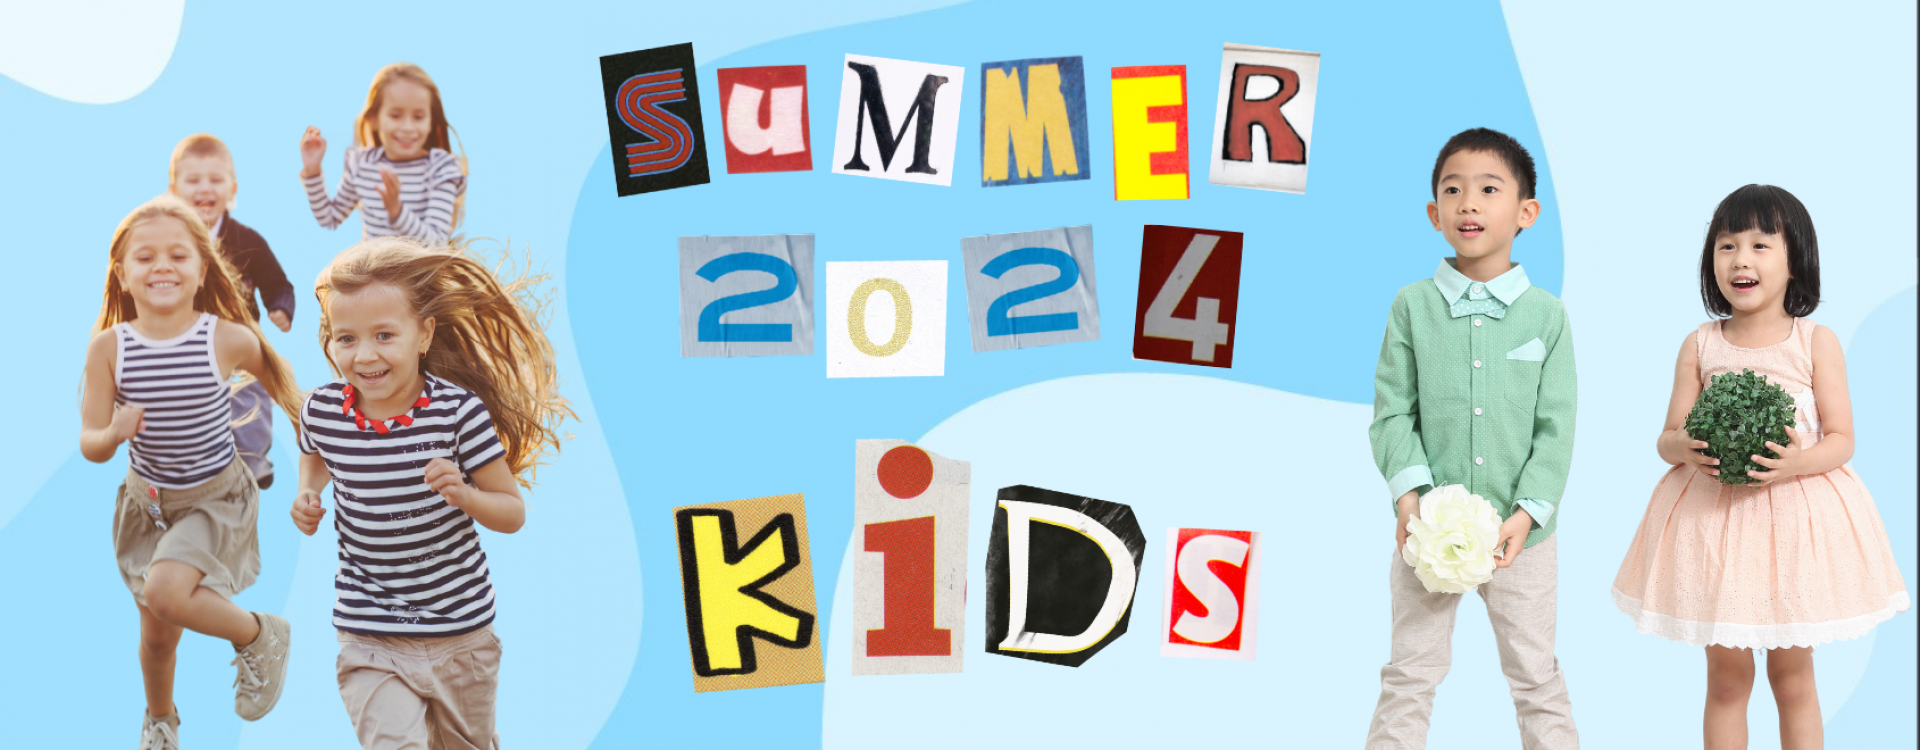 Summer24_Kids